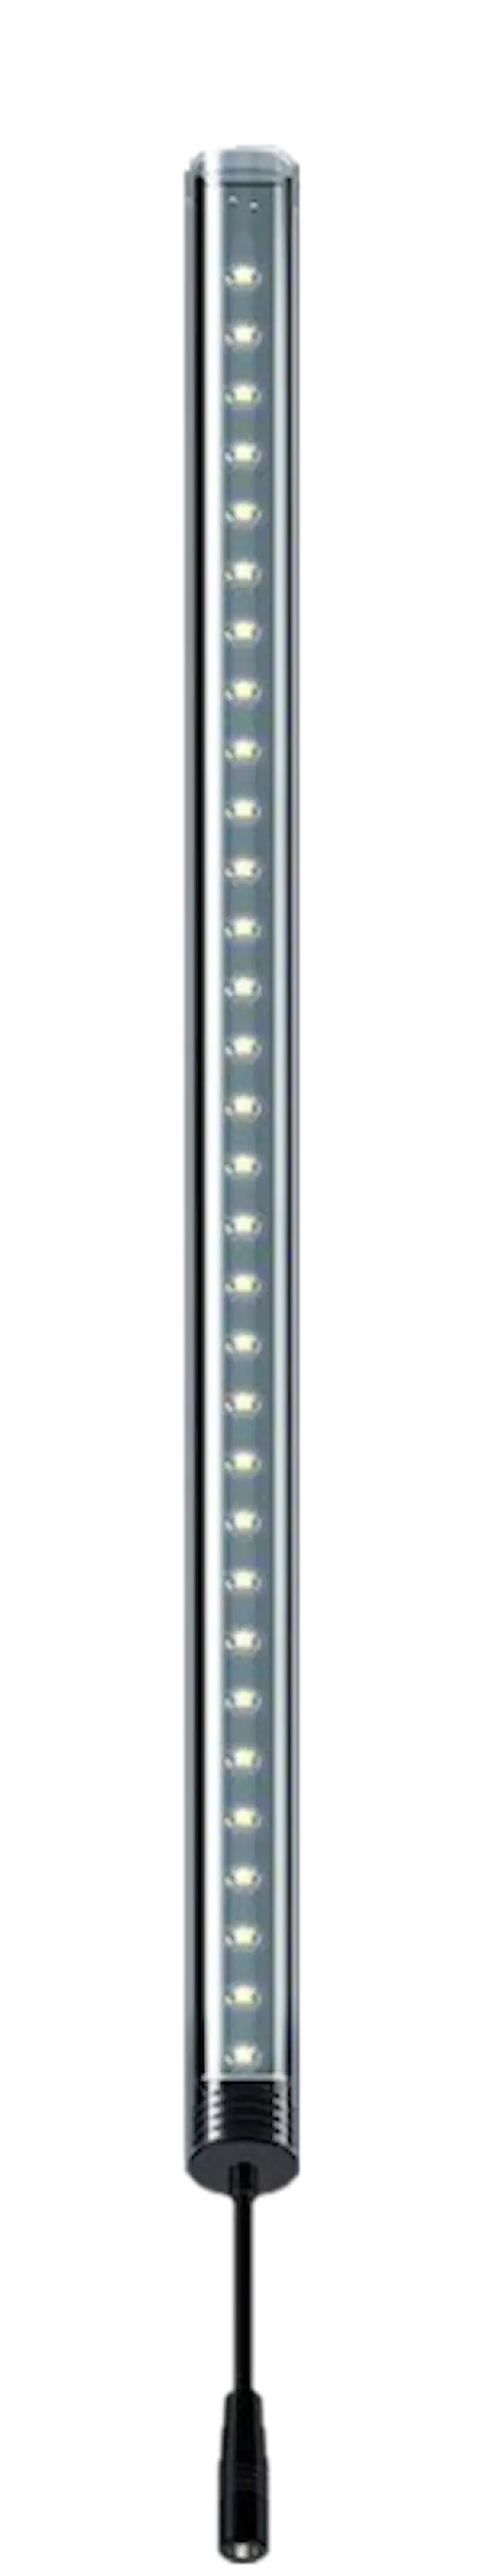 LightWave LED Complete Set, 270 - 350 mm